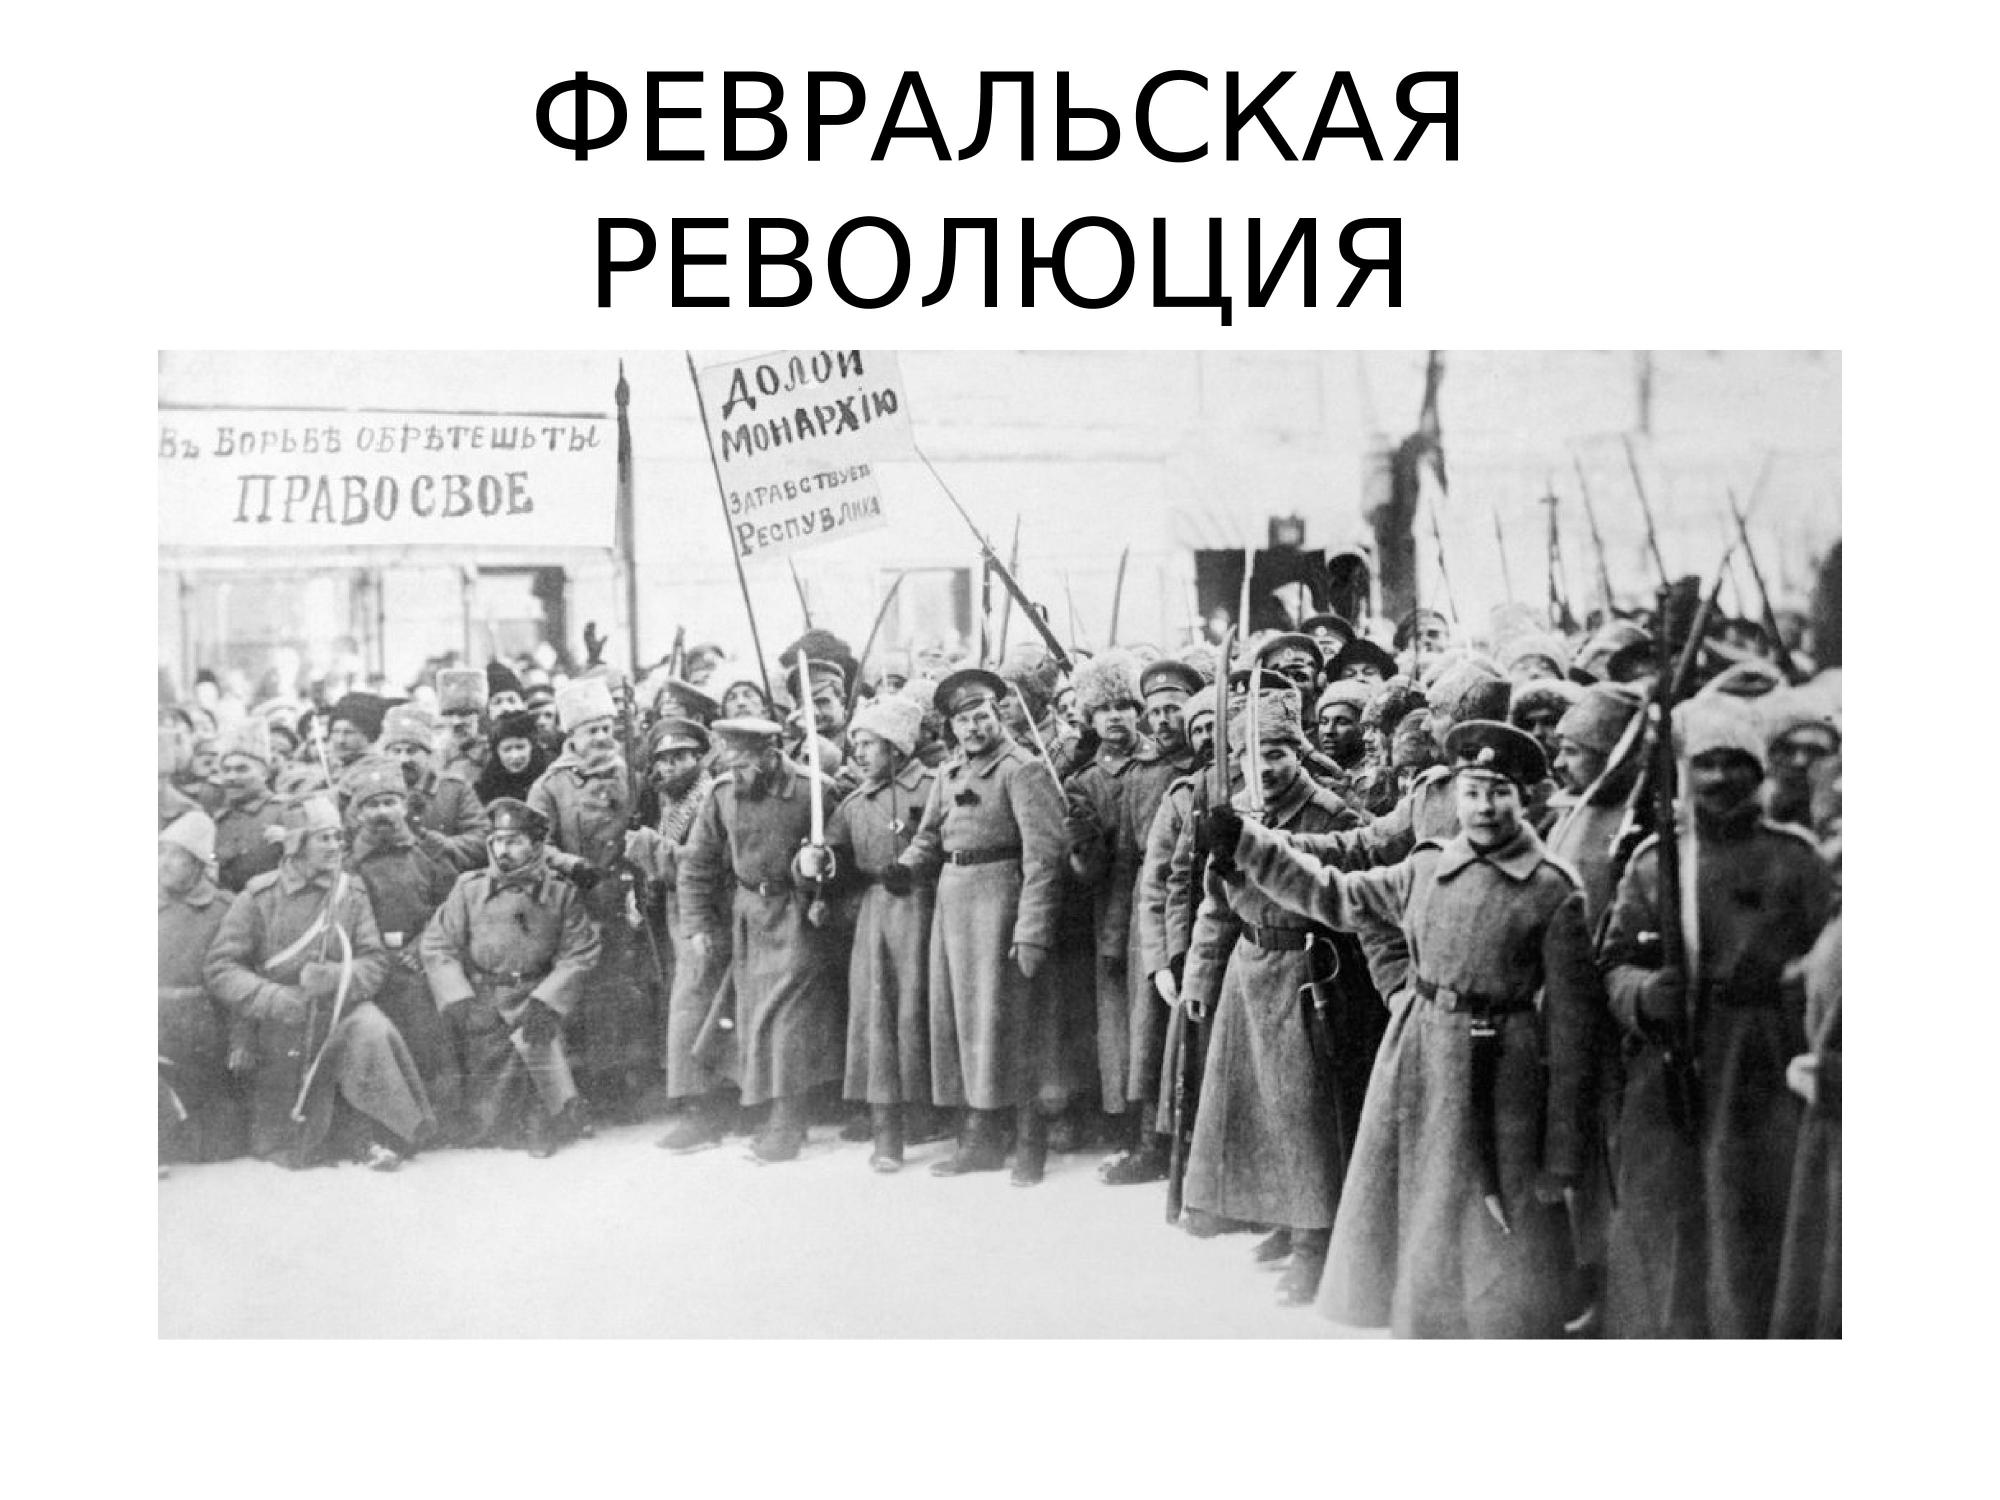 Величайшие события происходят в россии. 1917 Год – Февральская революция, отречение императора. Революция 23 февраля 1917 года в России. 23 Февраля 1917 года событие Февральская революция.